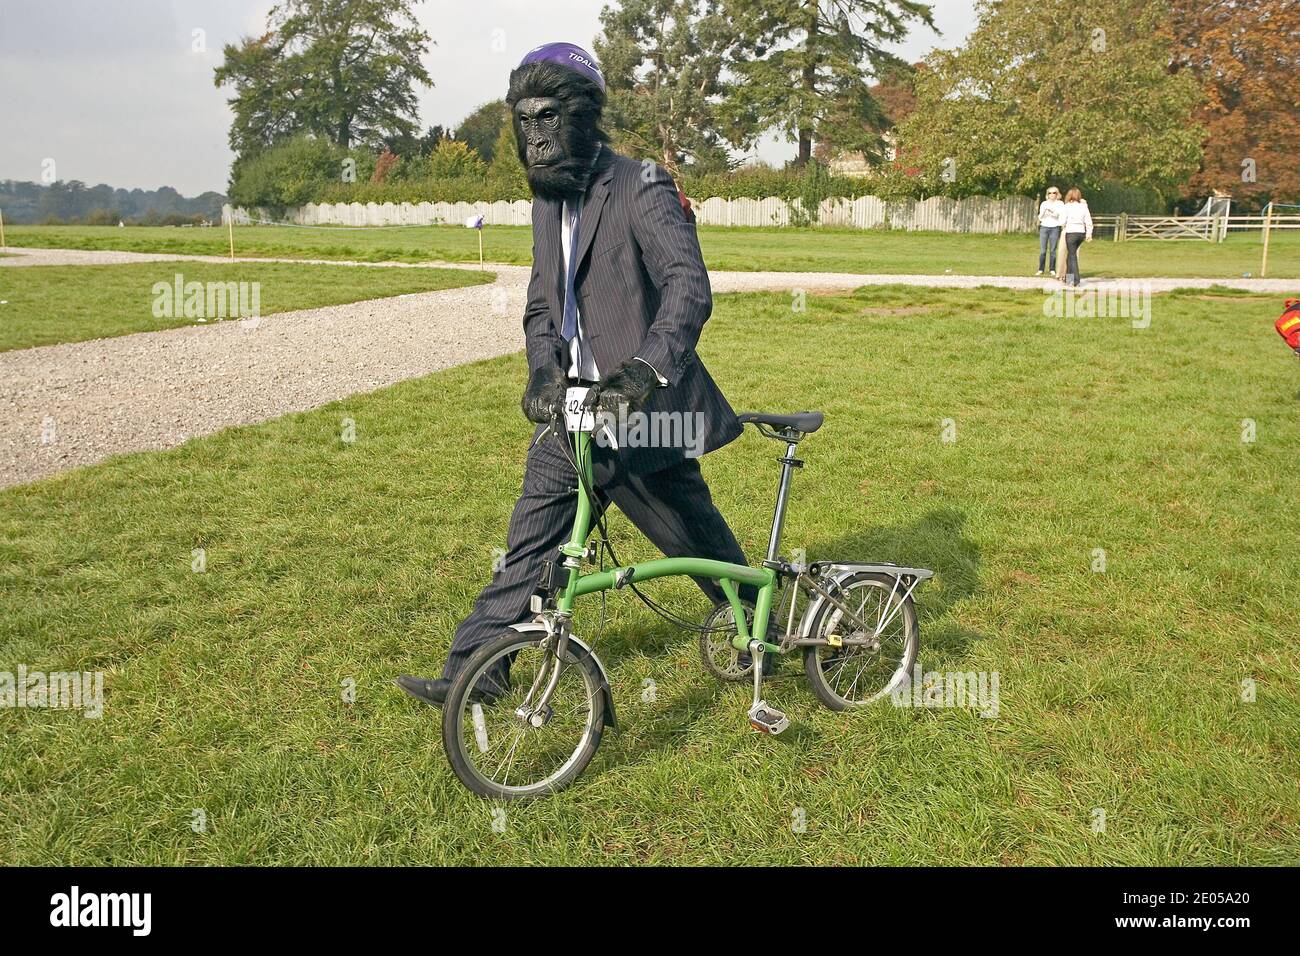 Participant portant un costume de singe poussant sa bicyclette pliante Brompton aux Championnats du monde de Brompton, qui se tiennent au Palais de Blenheim, Royaume-Uni . Banque D'Images